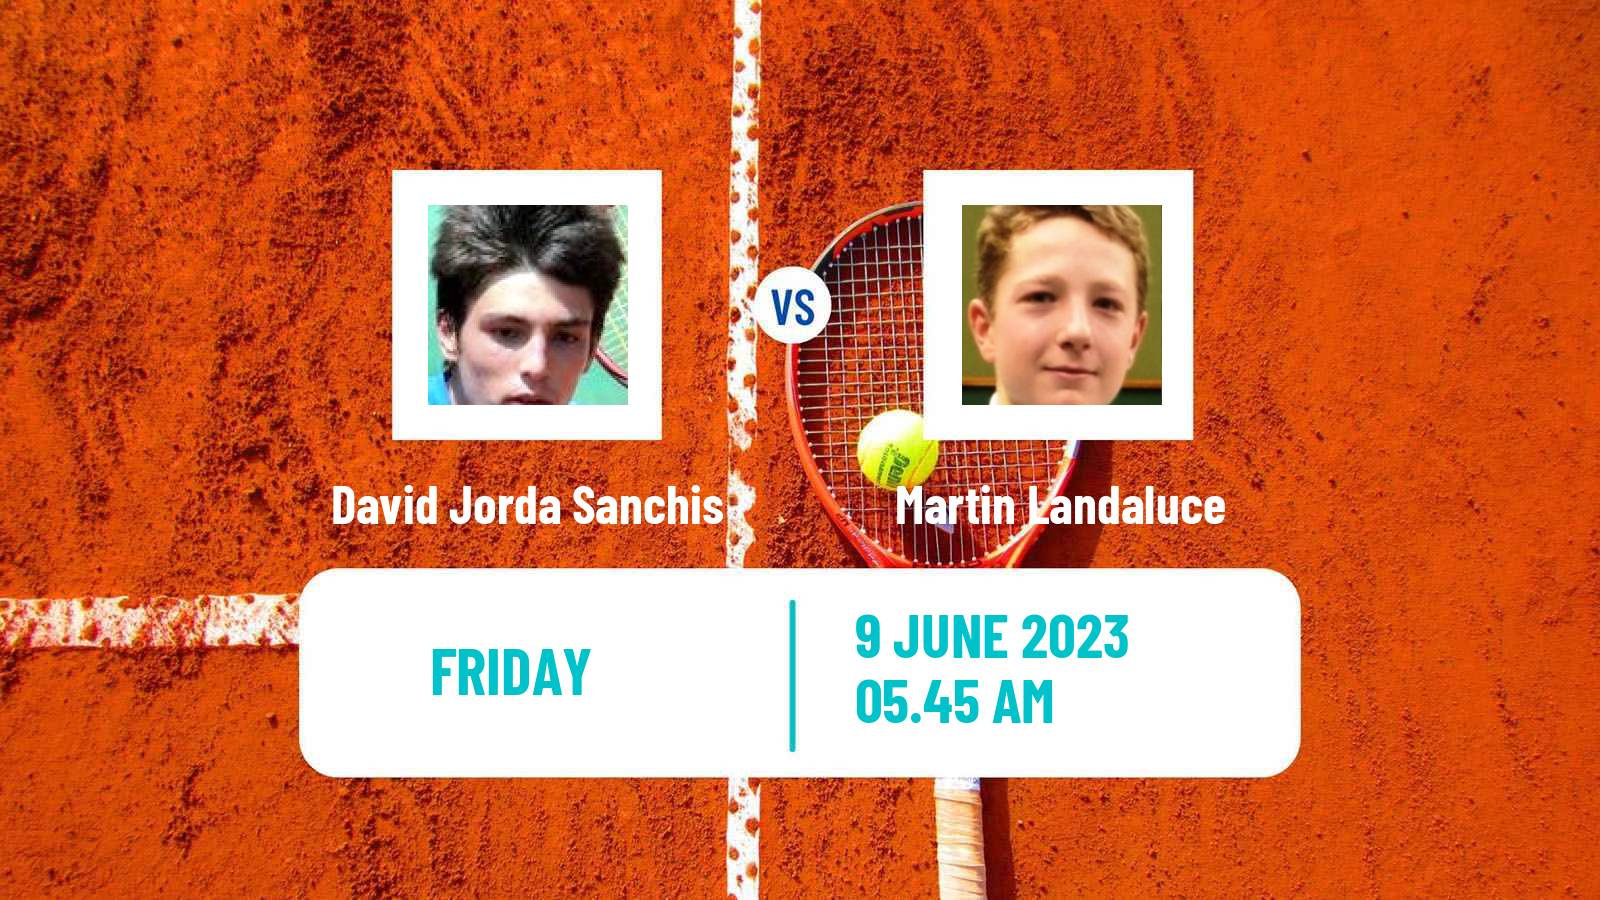 Tennis ITF M25 Cordoba Men David Jorda Sanchis - Martin Landaluce